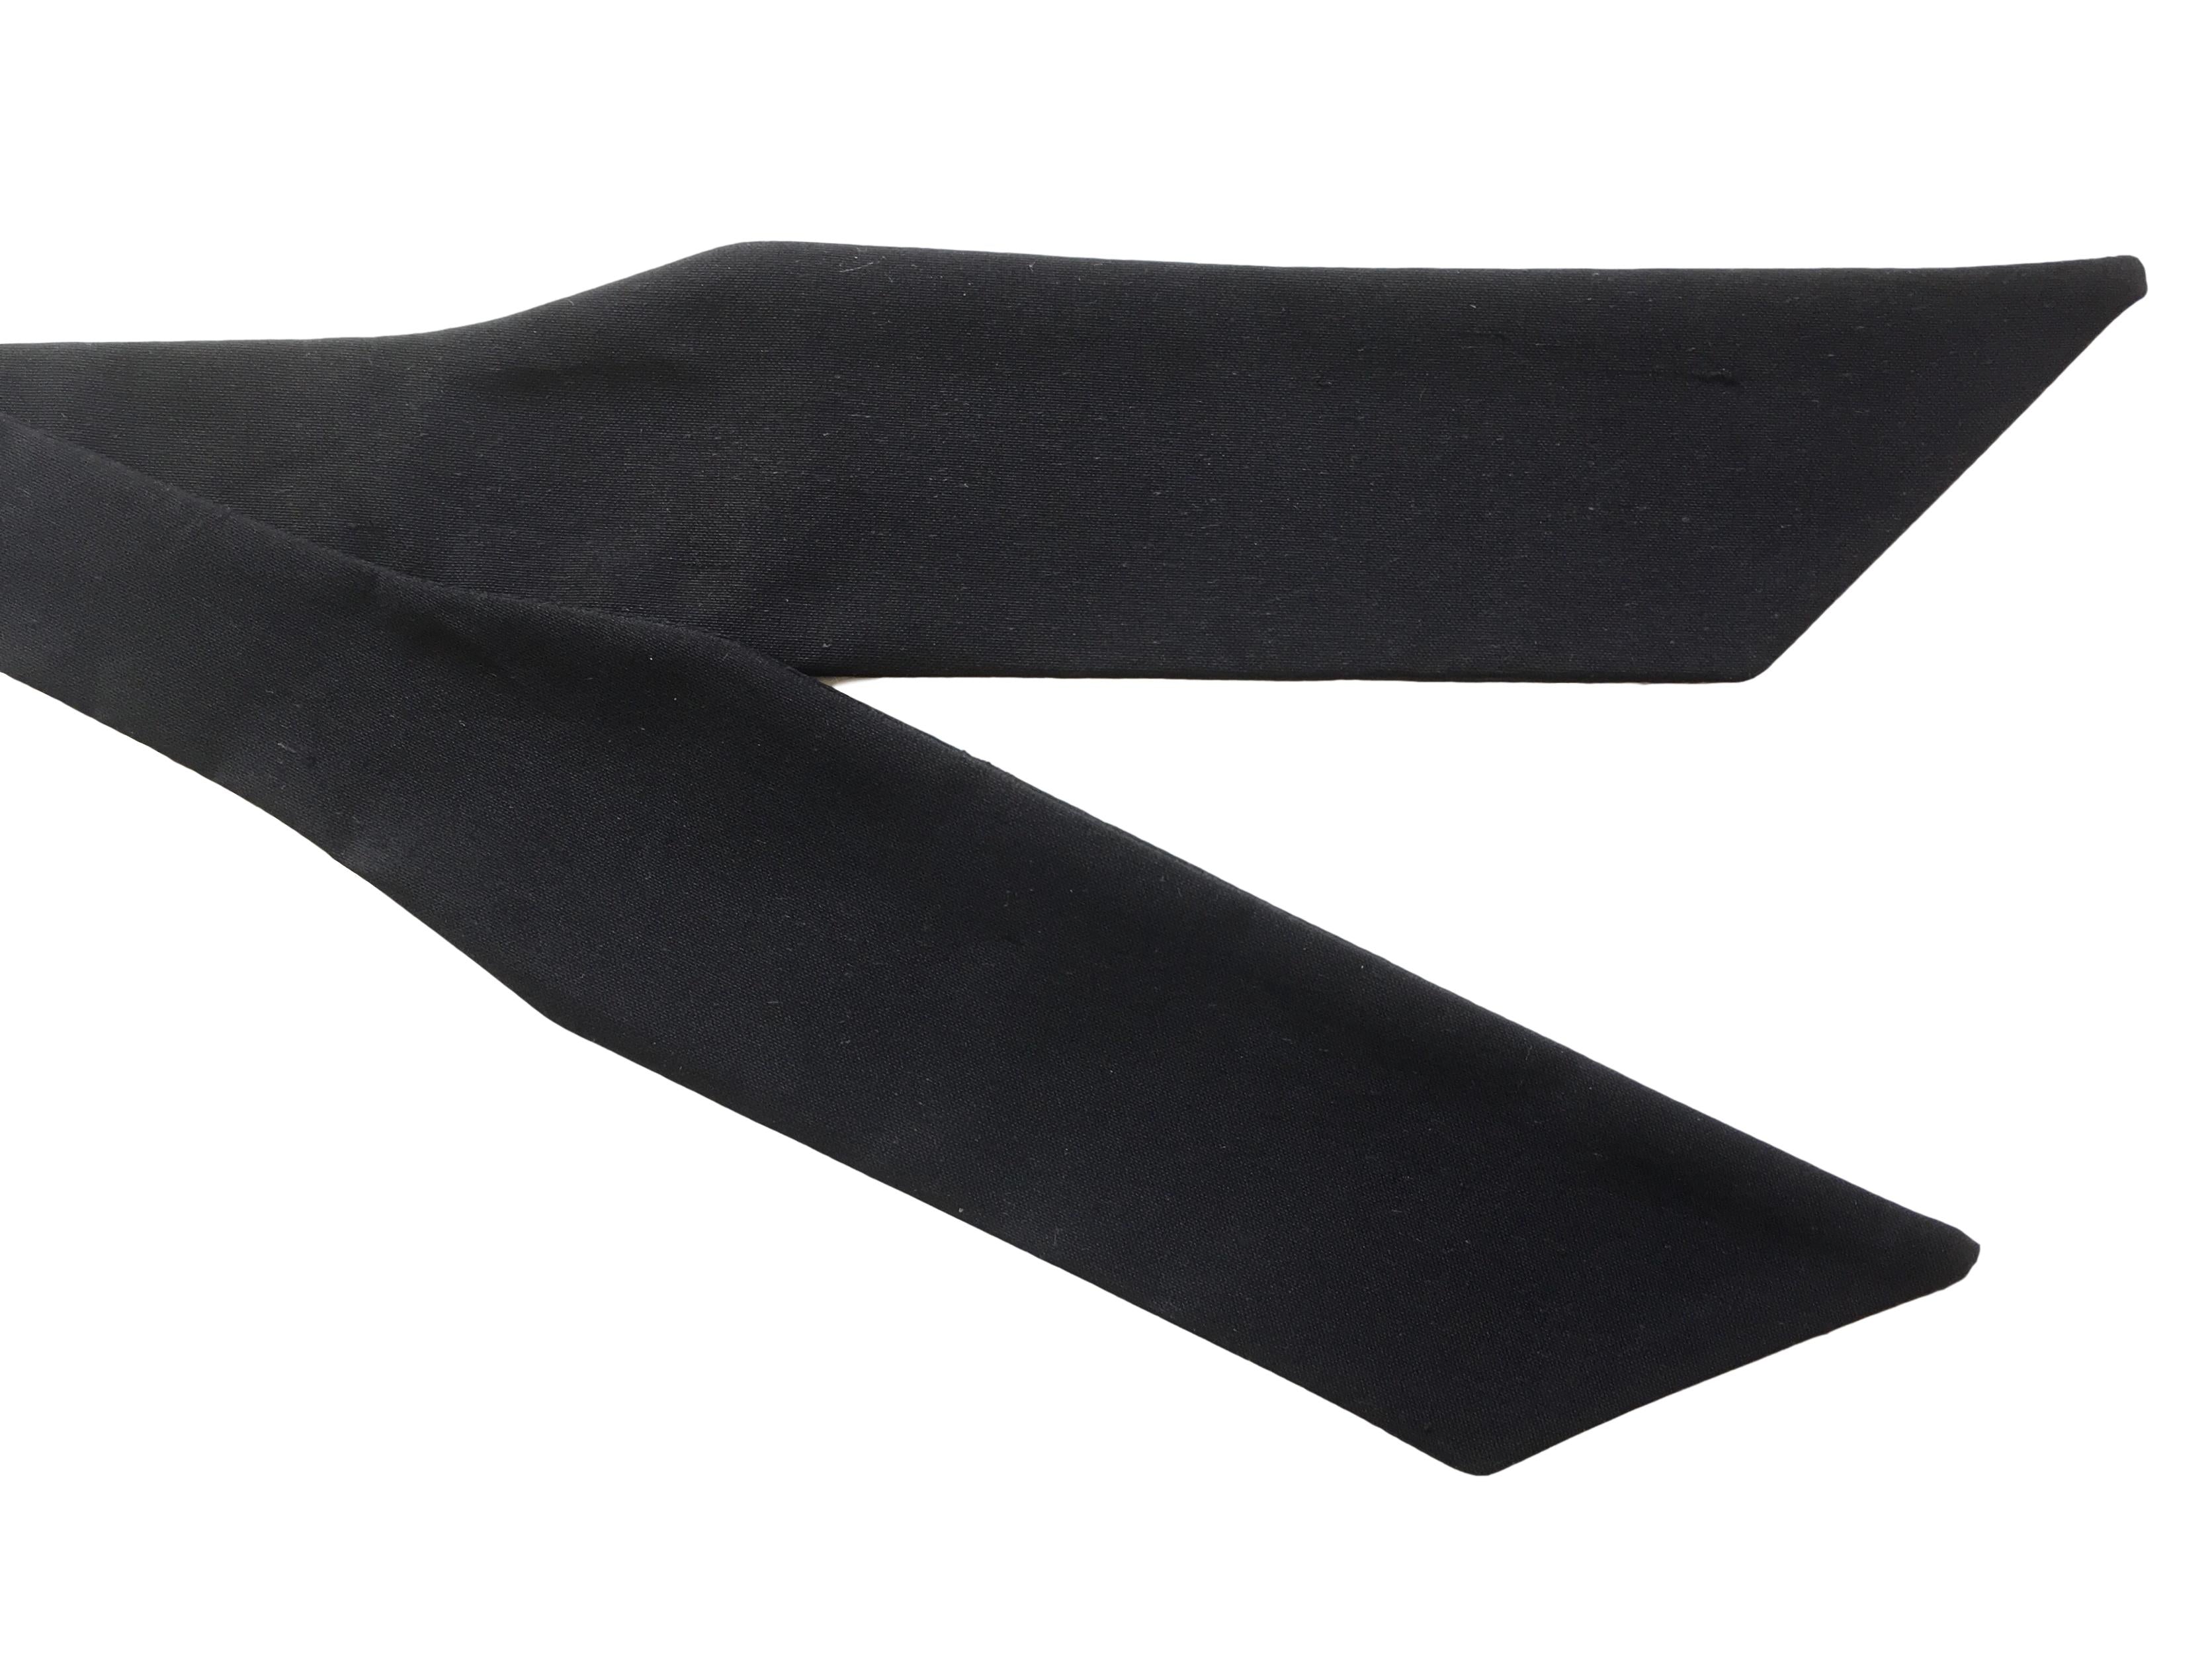 Rare Black Silk 'Wing' Self-Tie Bow Tie